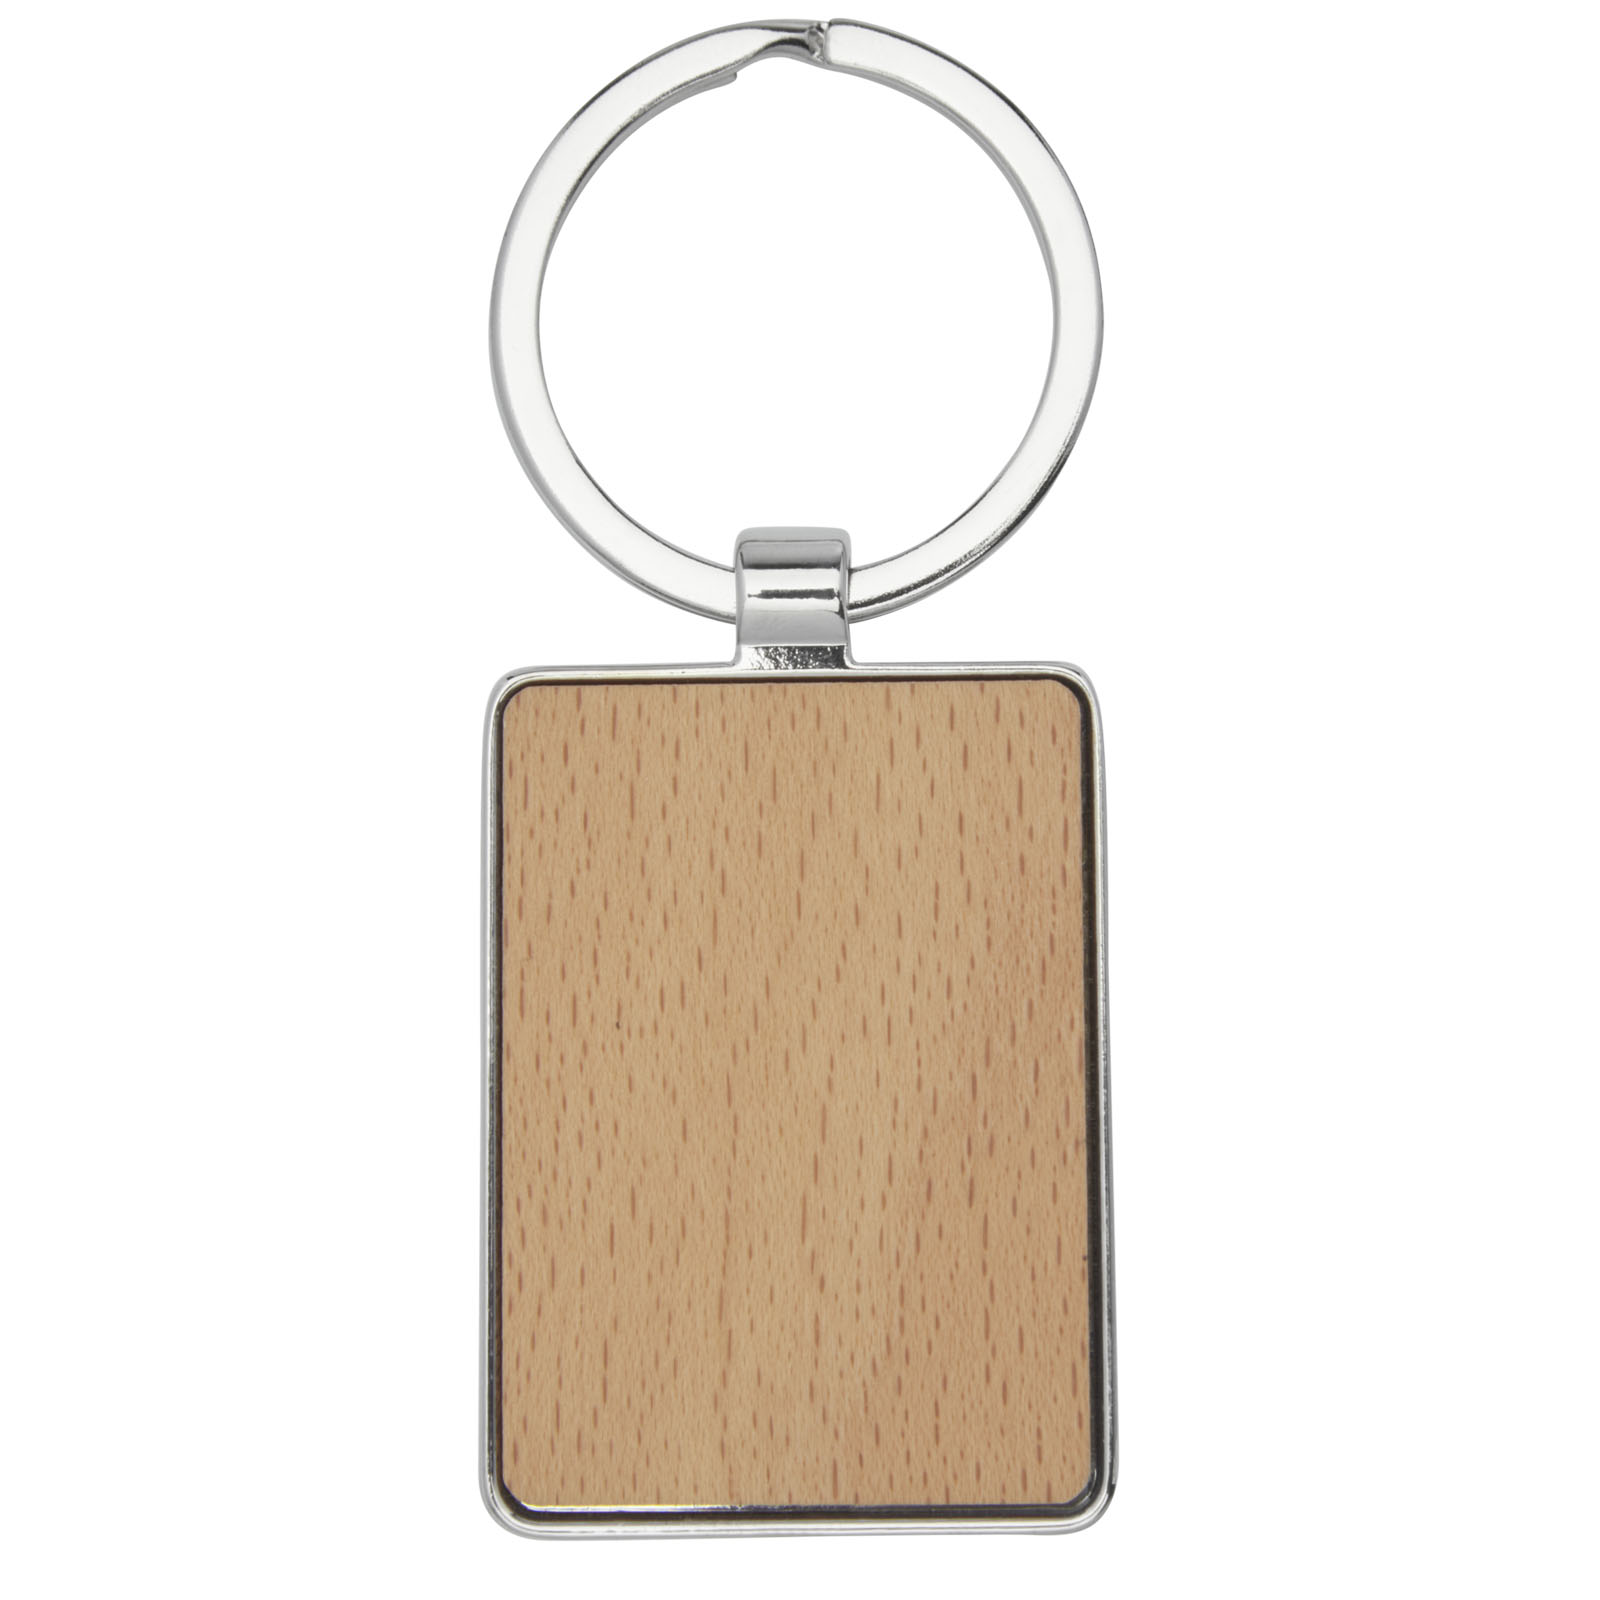 Porte-clés publicitaires - Porte-clés rectangulaire Mauro en bois de hêtre - 2